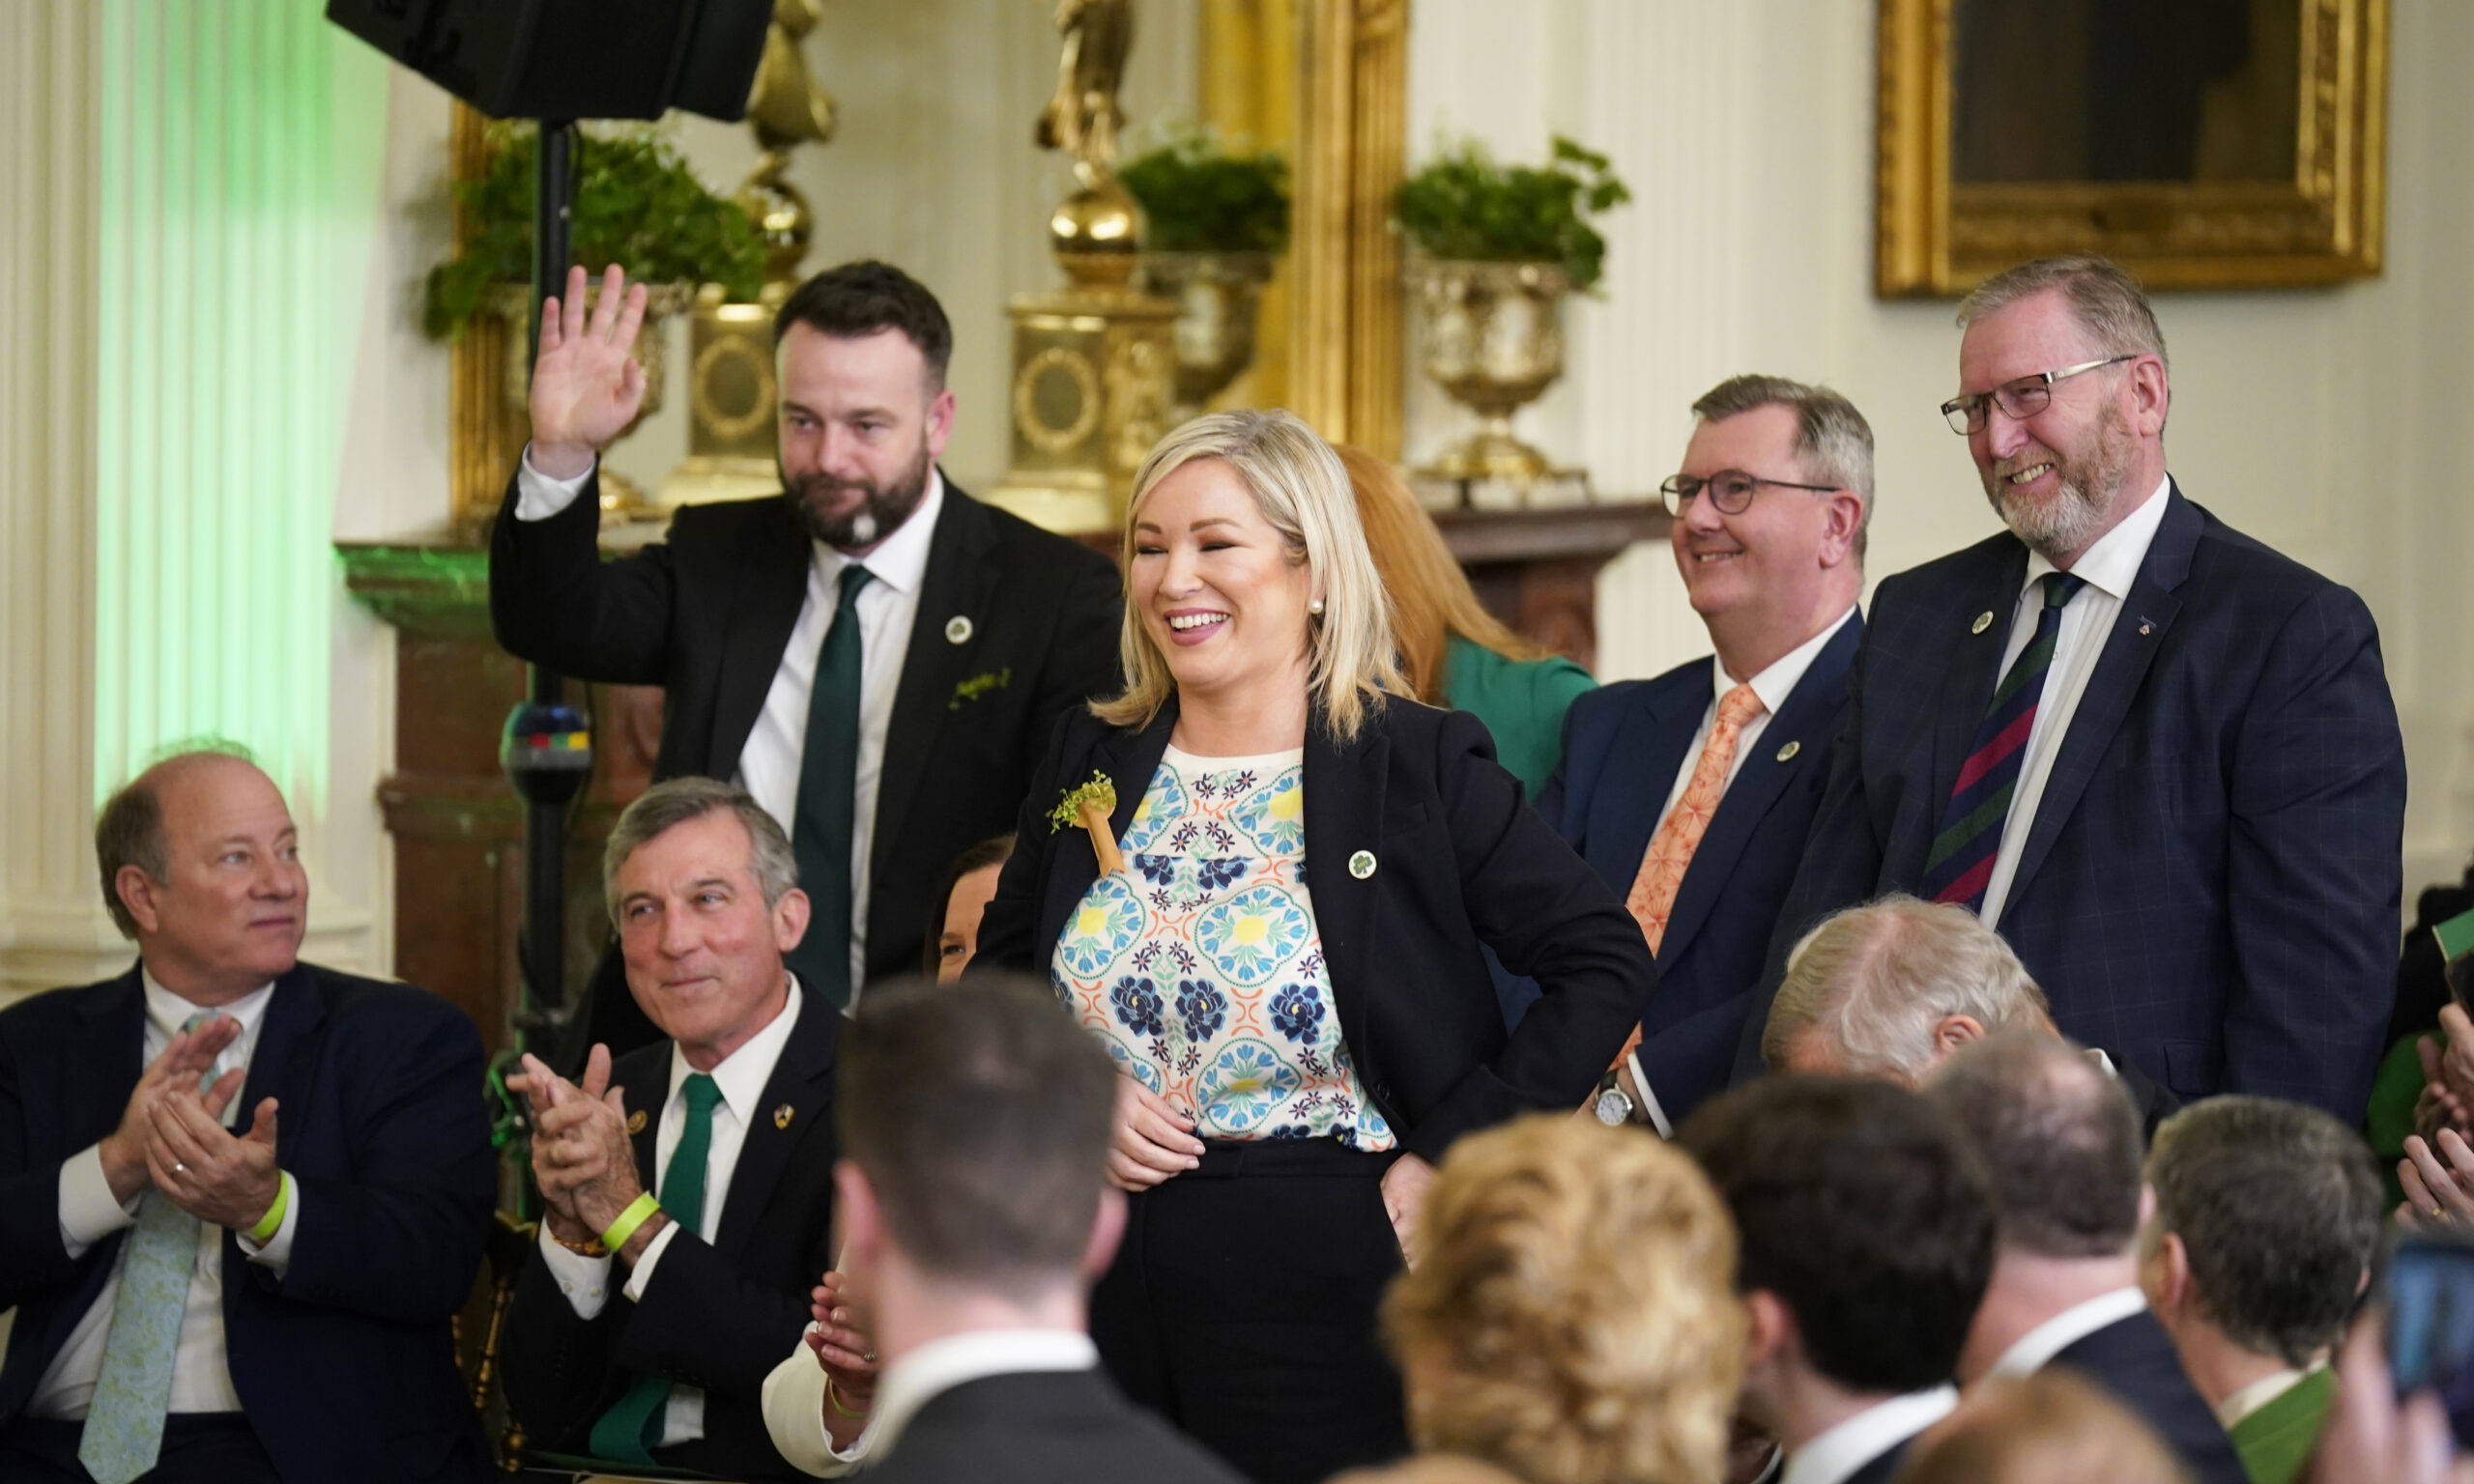 Történelmi győzelmet aratott a katolikus párt Észak-Írországban, közelebb került az ír sziget egyesülése